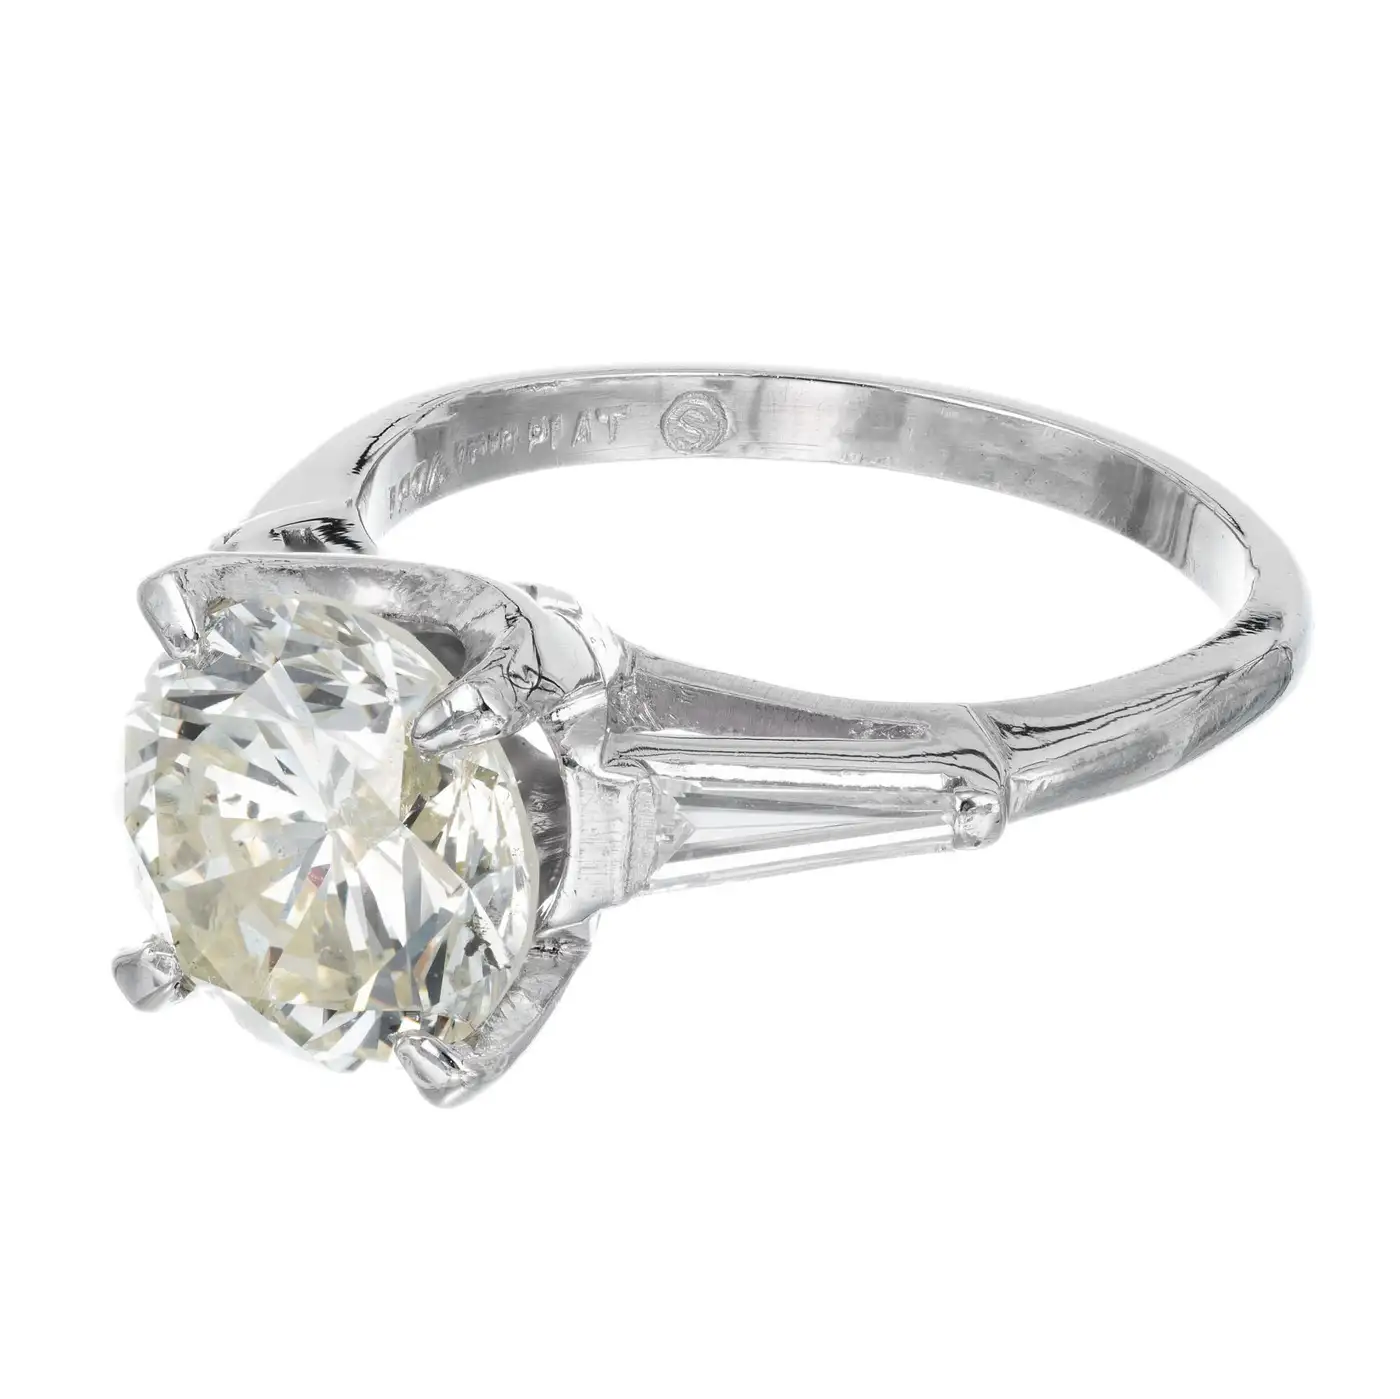 2.53-Carat-Round-Cut-Baguette-Diamond-Three-Stone-Platinum-Engagement-Ring-5.webp